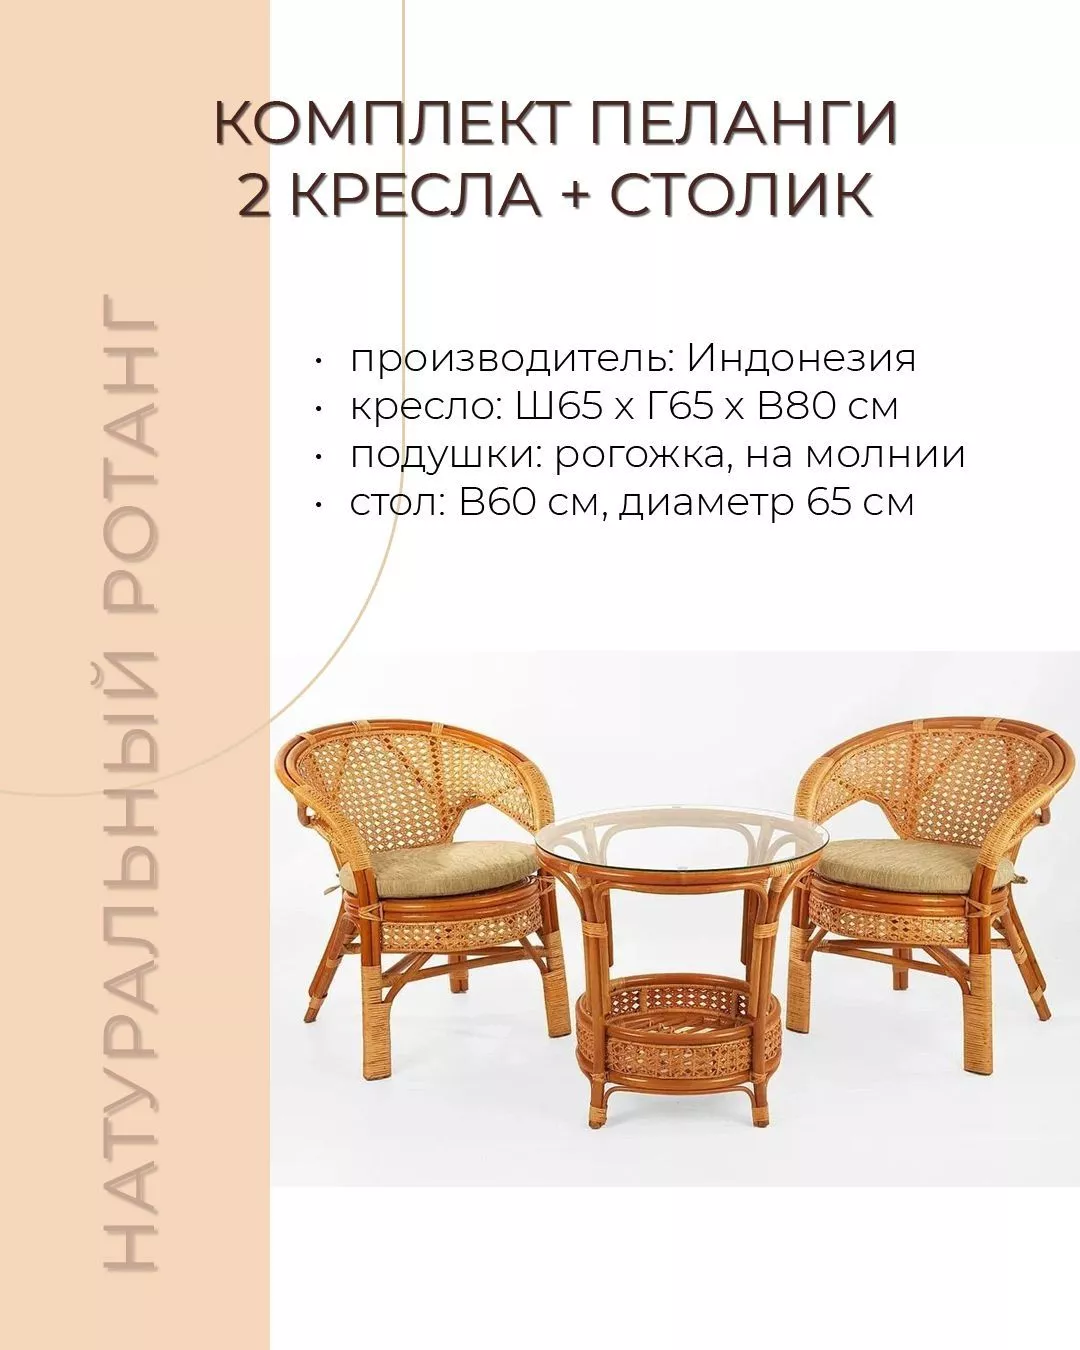 Комплект мебели из ротанга Пеланги 02 15 дуэт с круглым столом коньяк